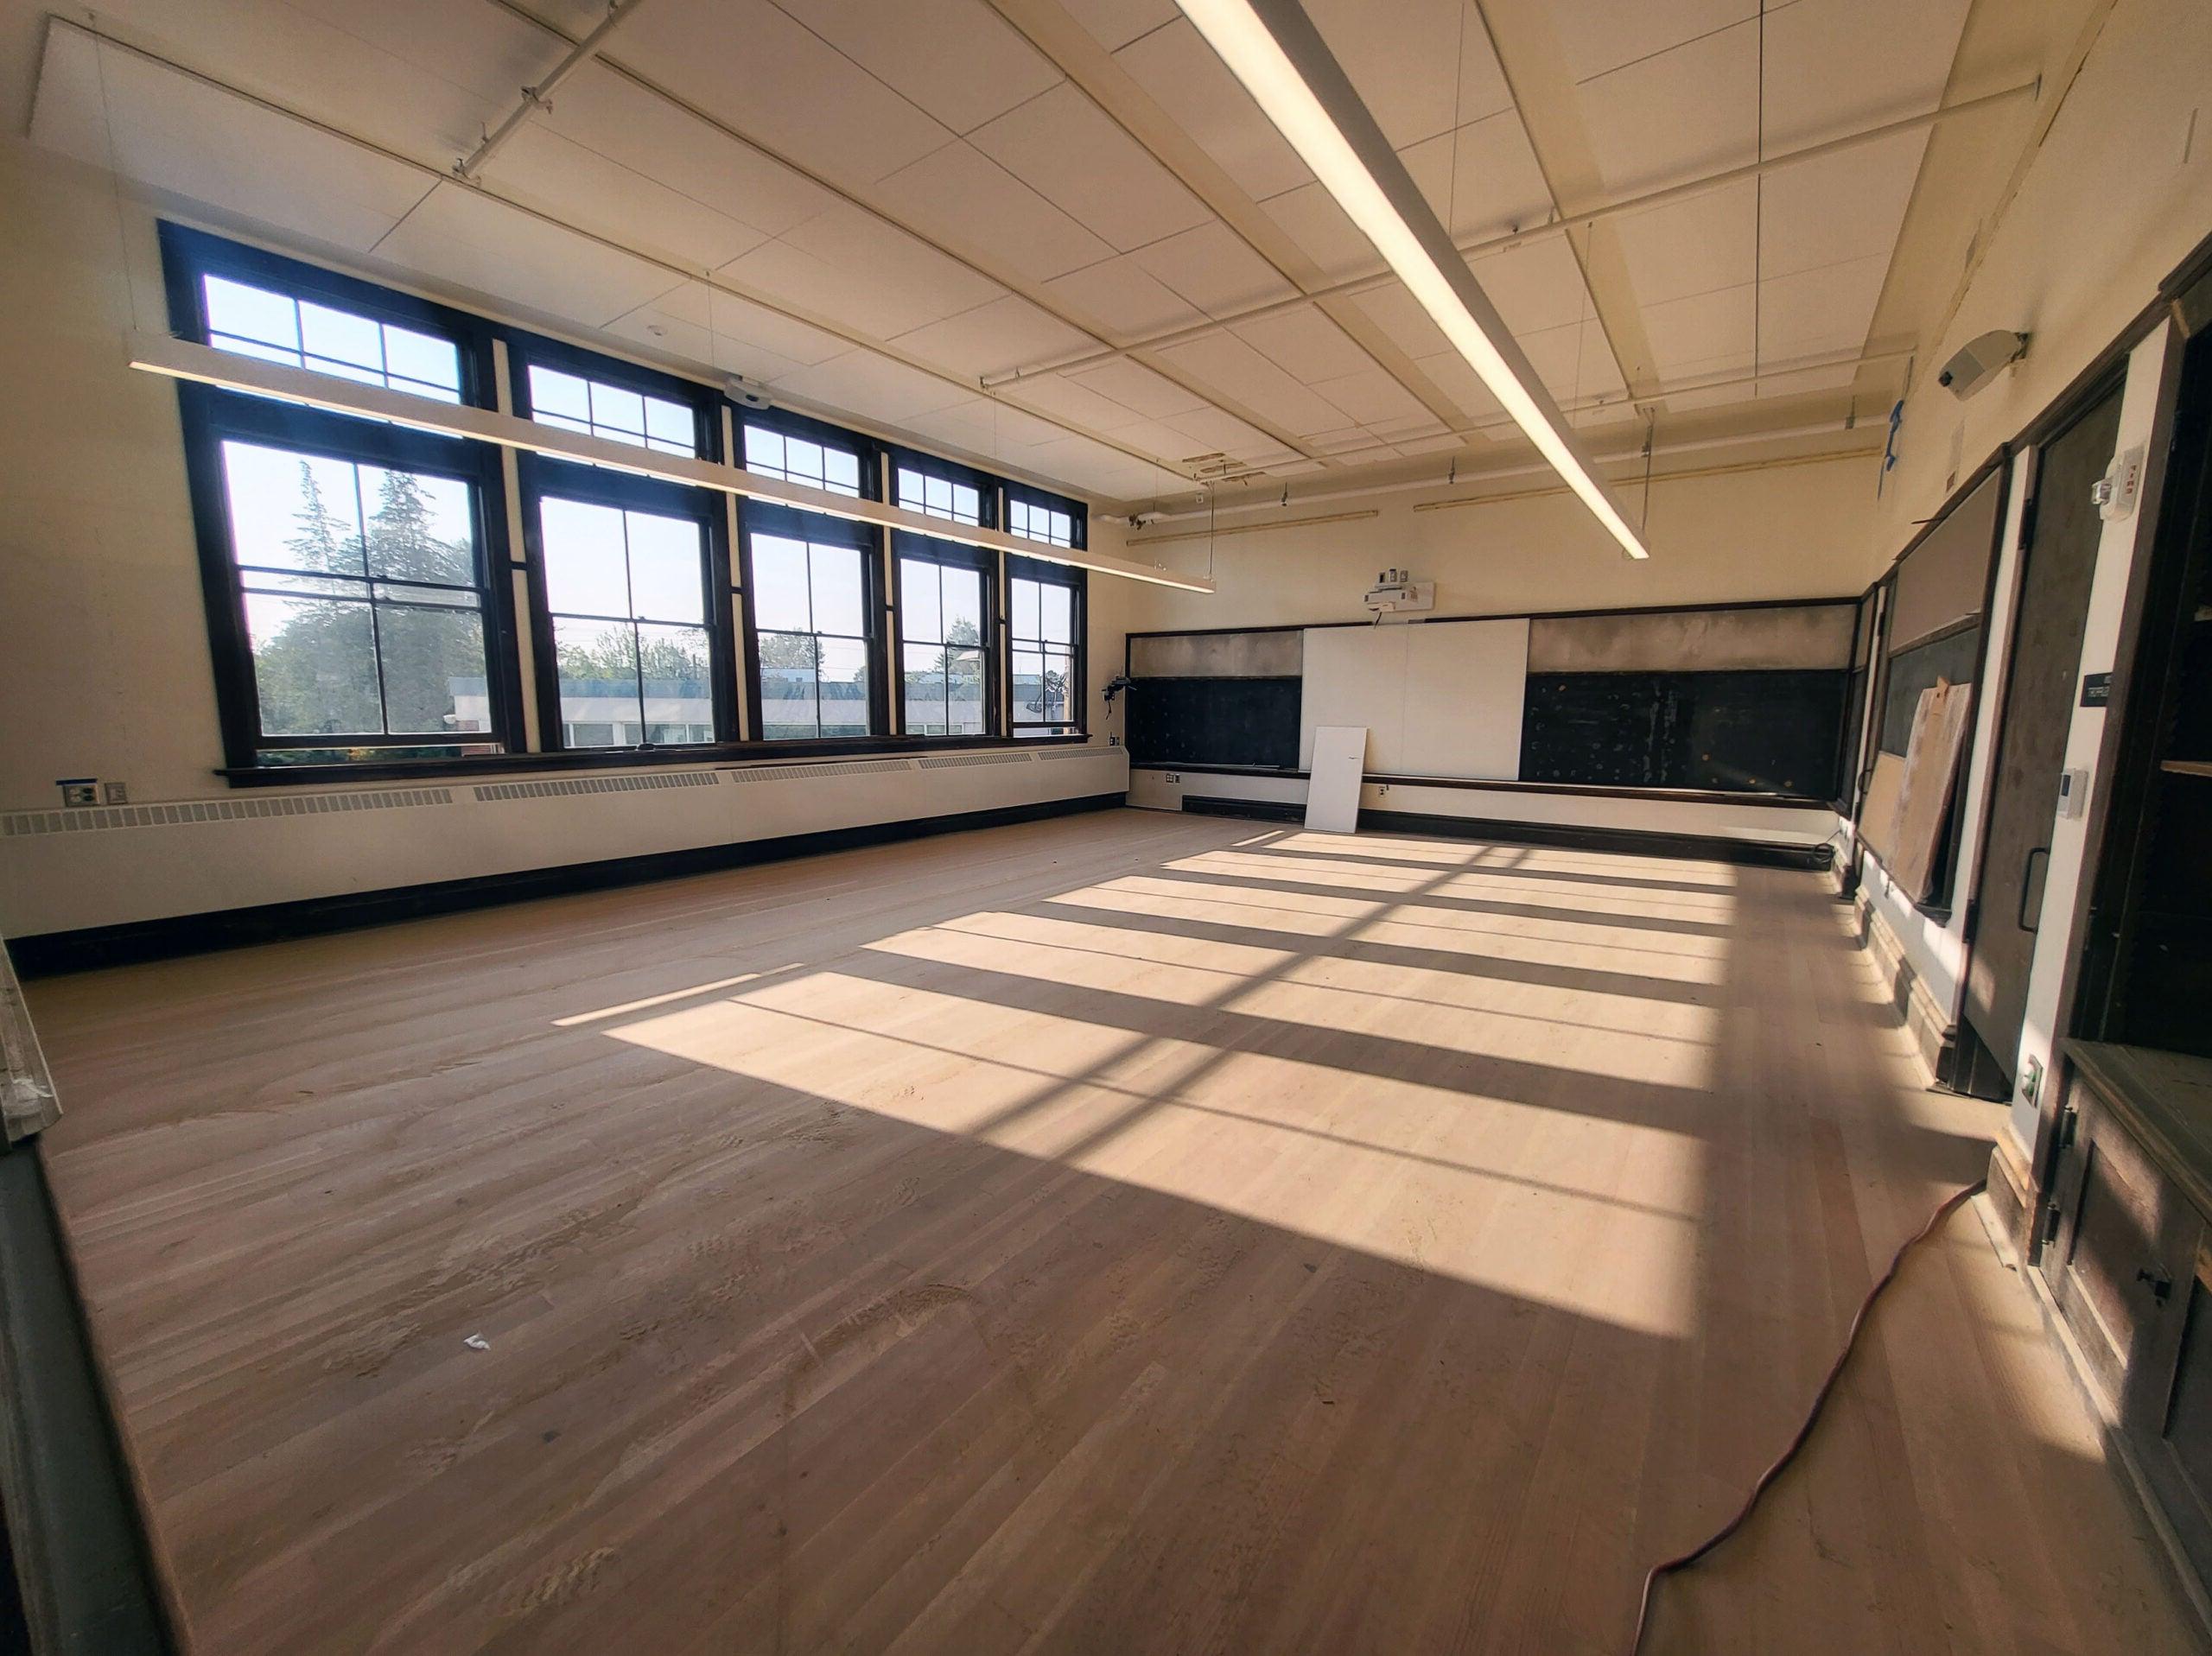 一间有木地板和木框窗的教室